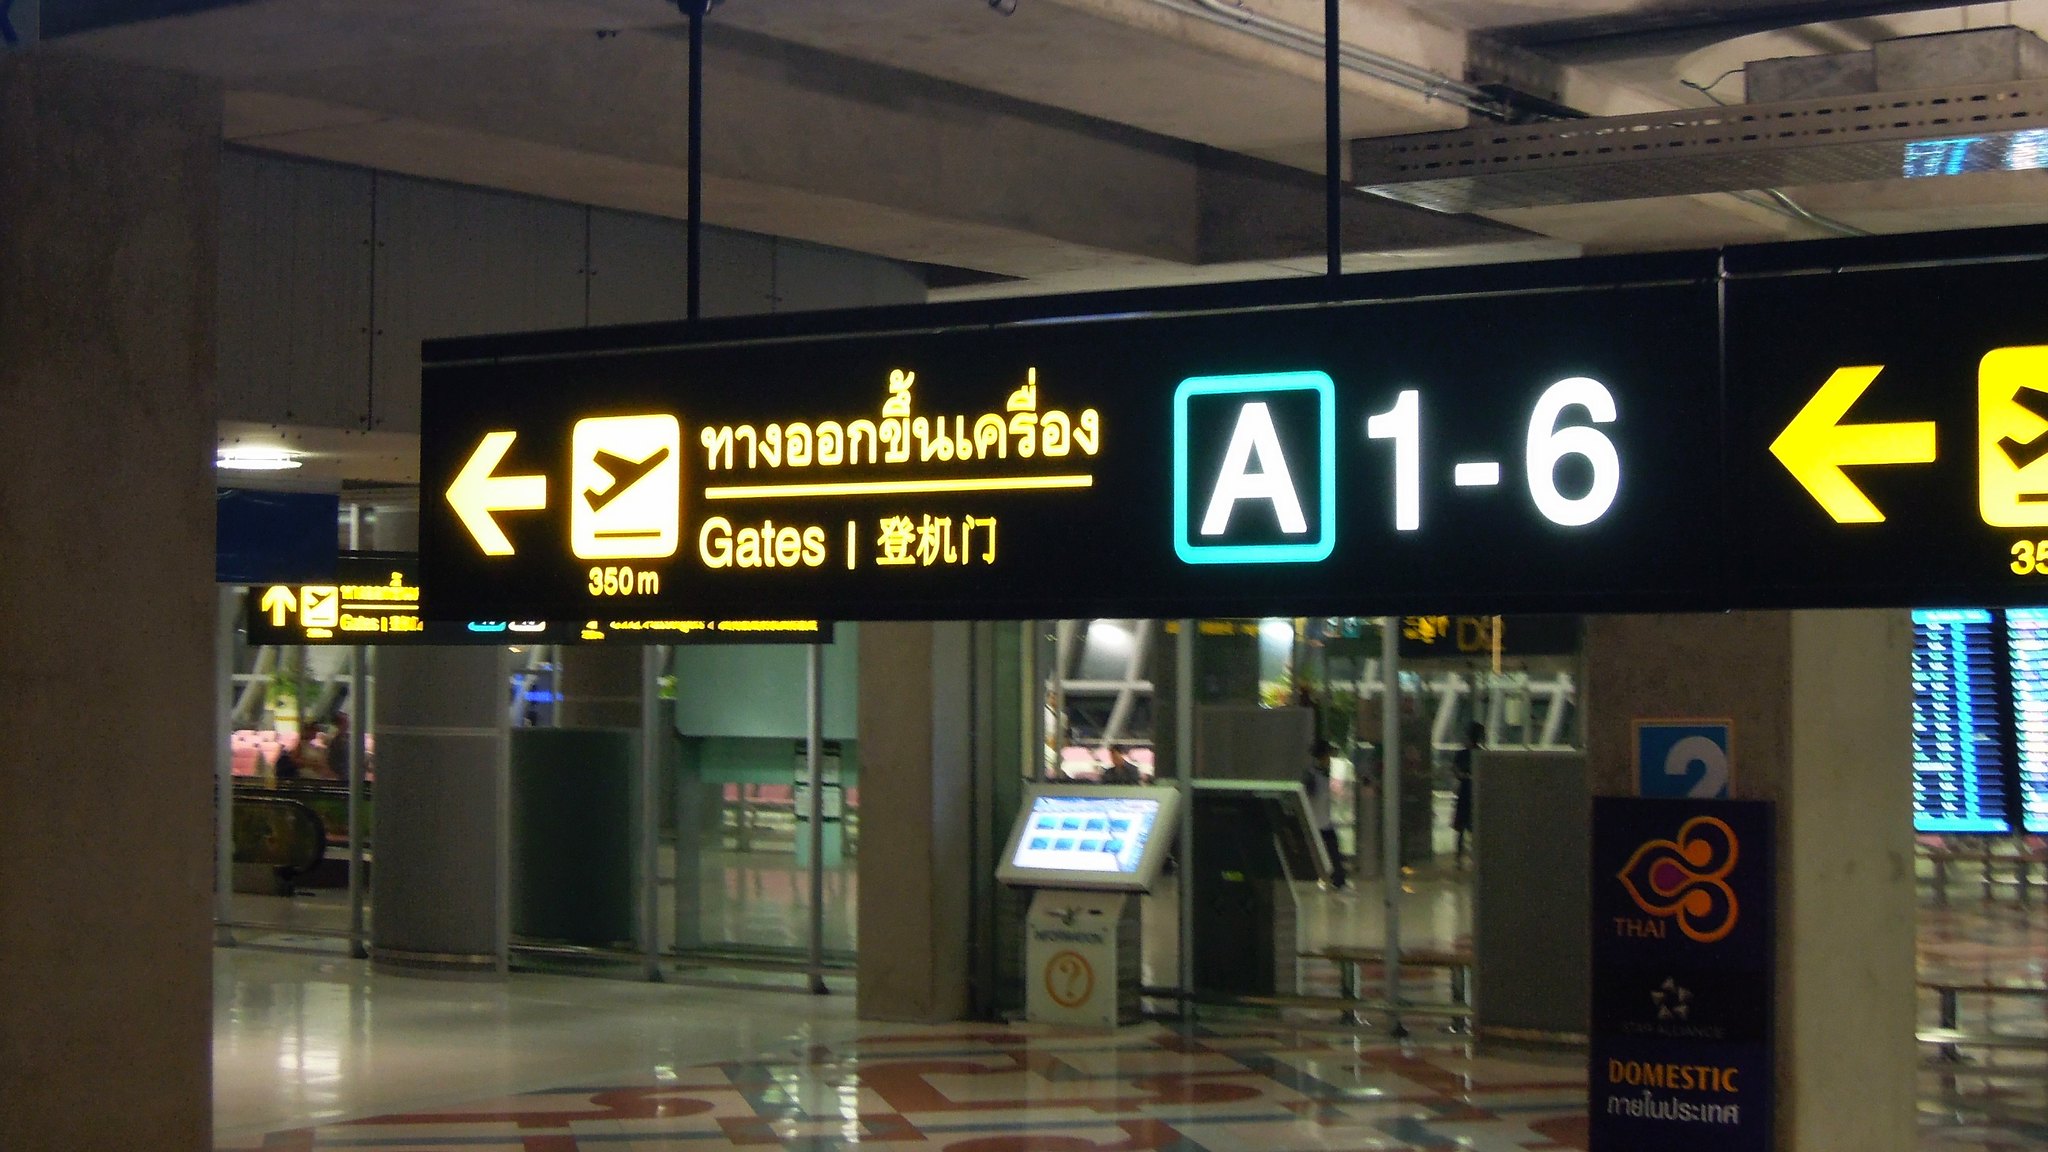 Gates A1 to A6, Concourse A, Suvarnabhumi Airport, Bangkok